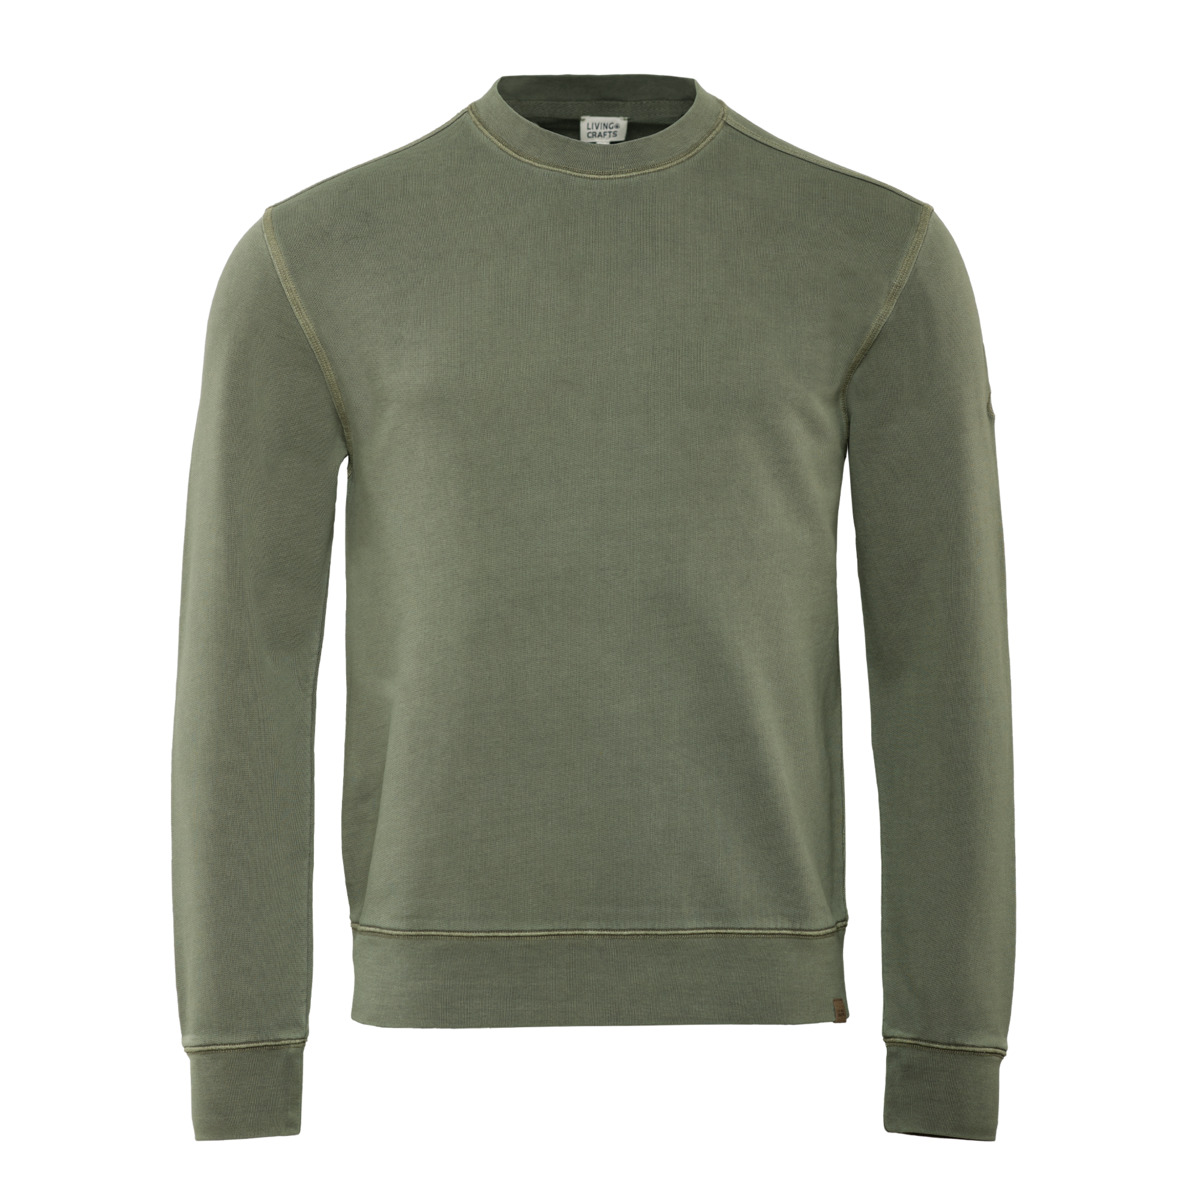 Green Unisex Sweatshirt, RONNY